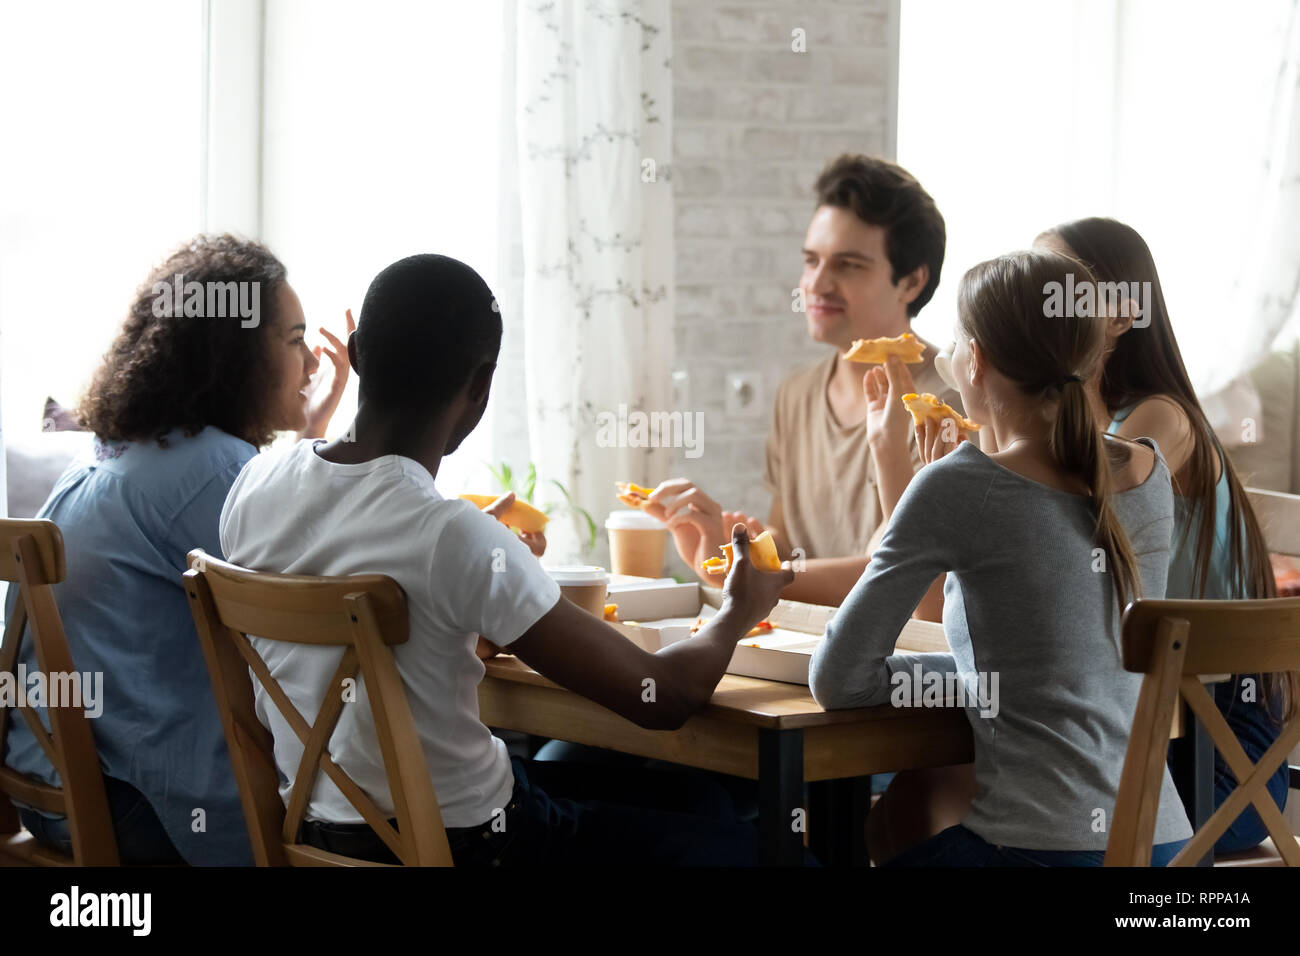 Multirazziale amici avente una conversazione e mangiare la pizza in cafe Foto Stock